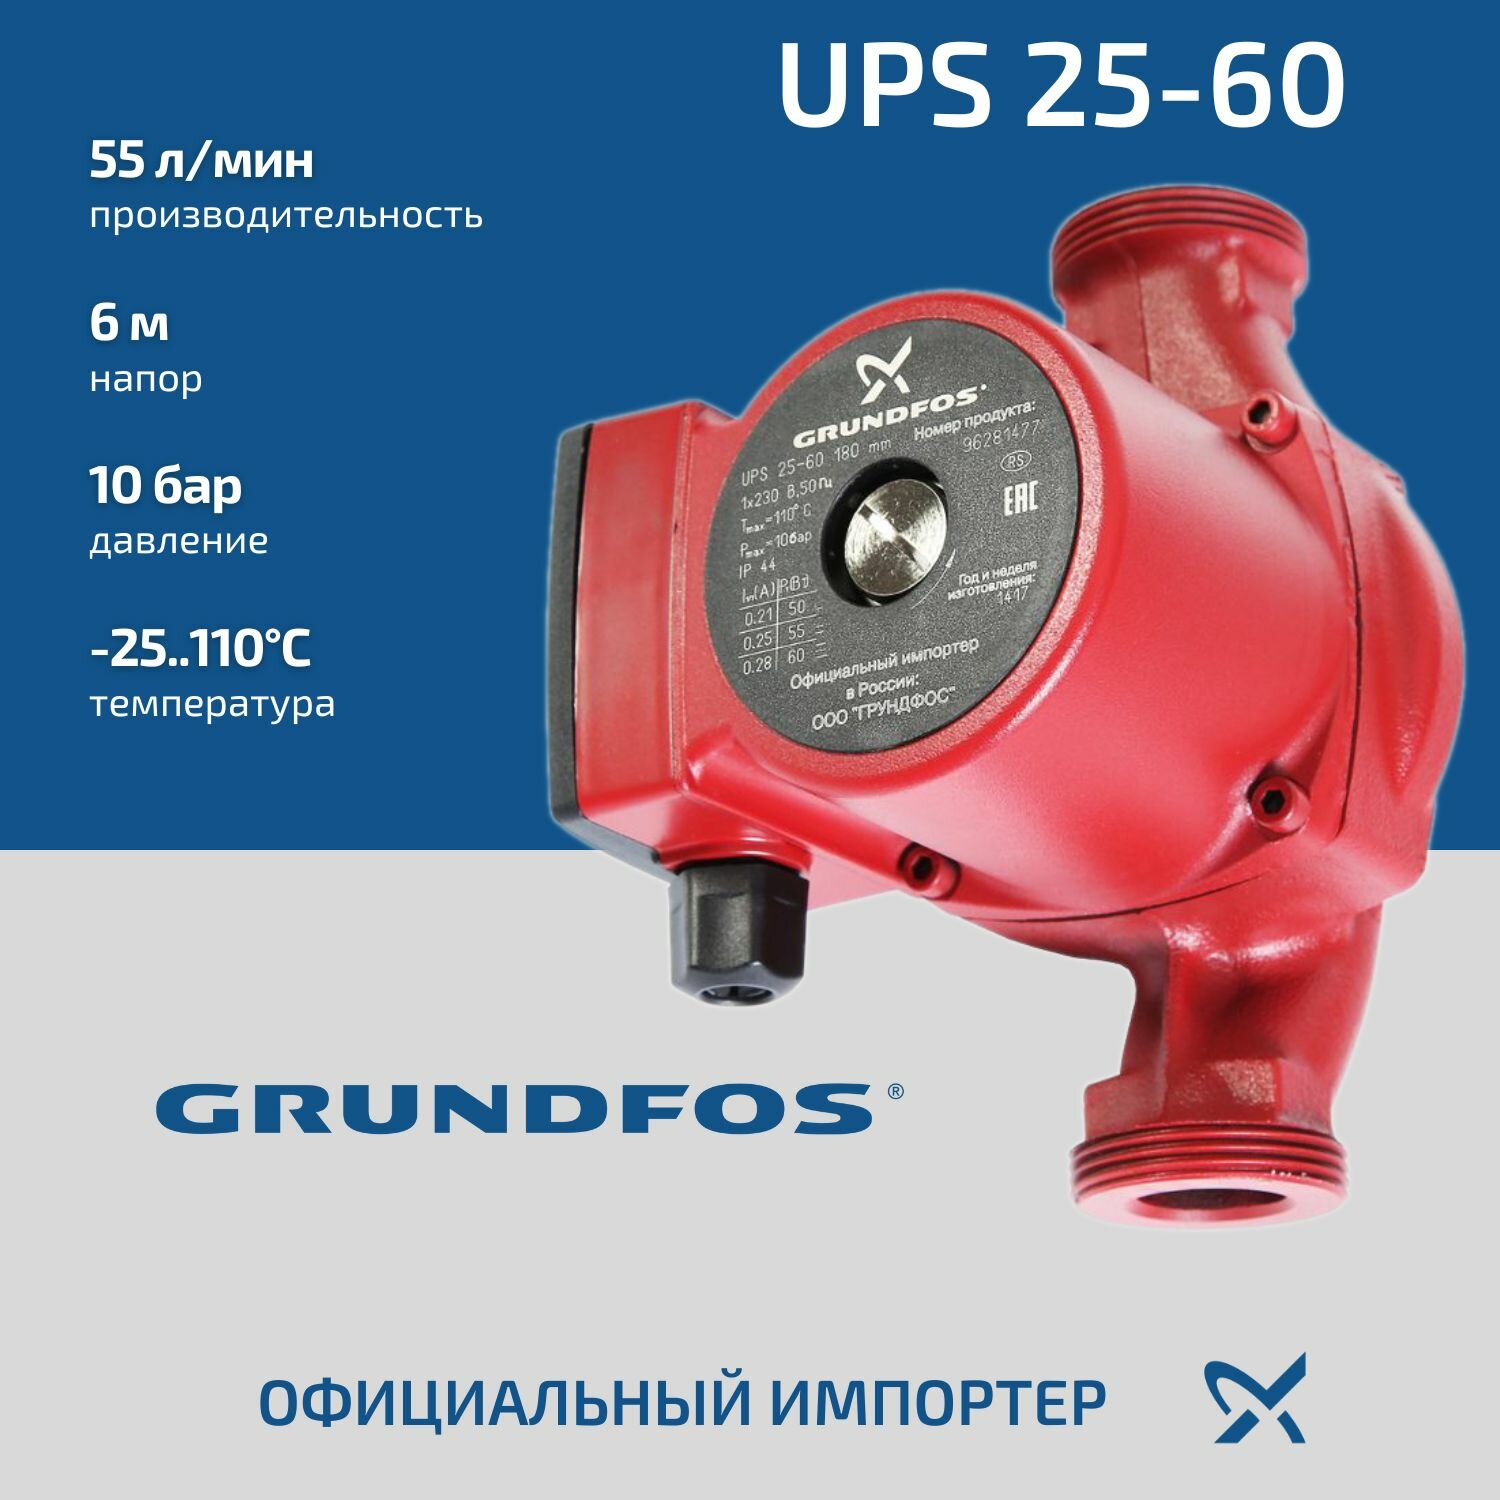 Циркуляционный насос Grundfos UPS 25-60 (180мм, 4,2 м3/ч, 6 м)